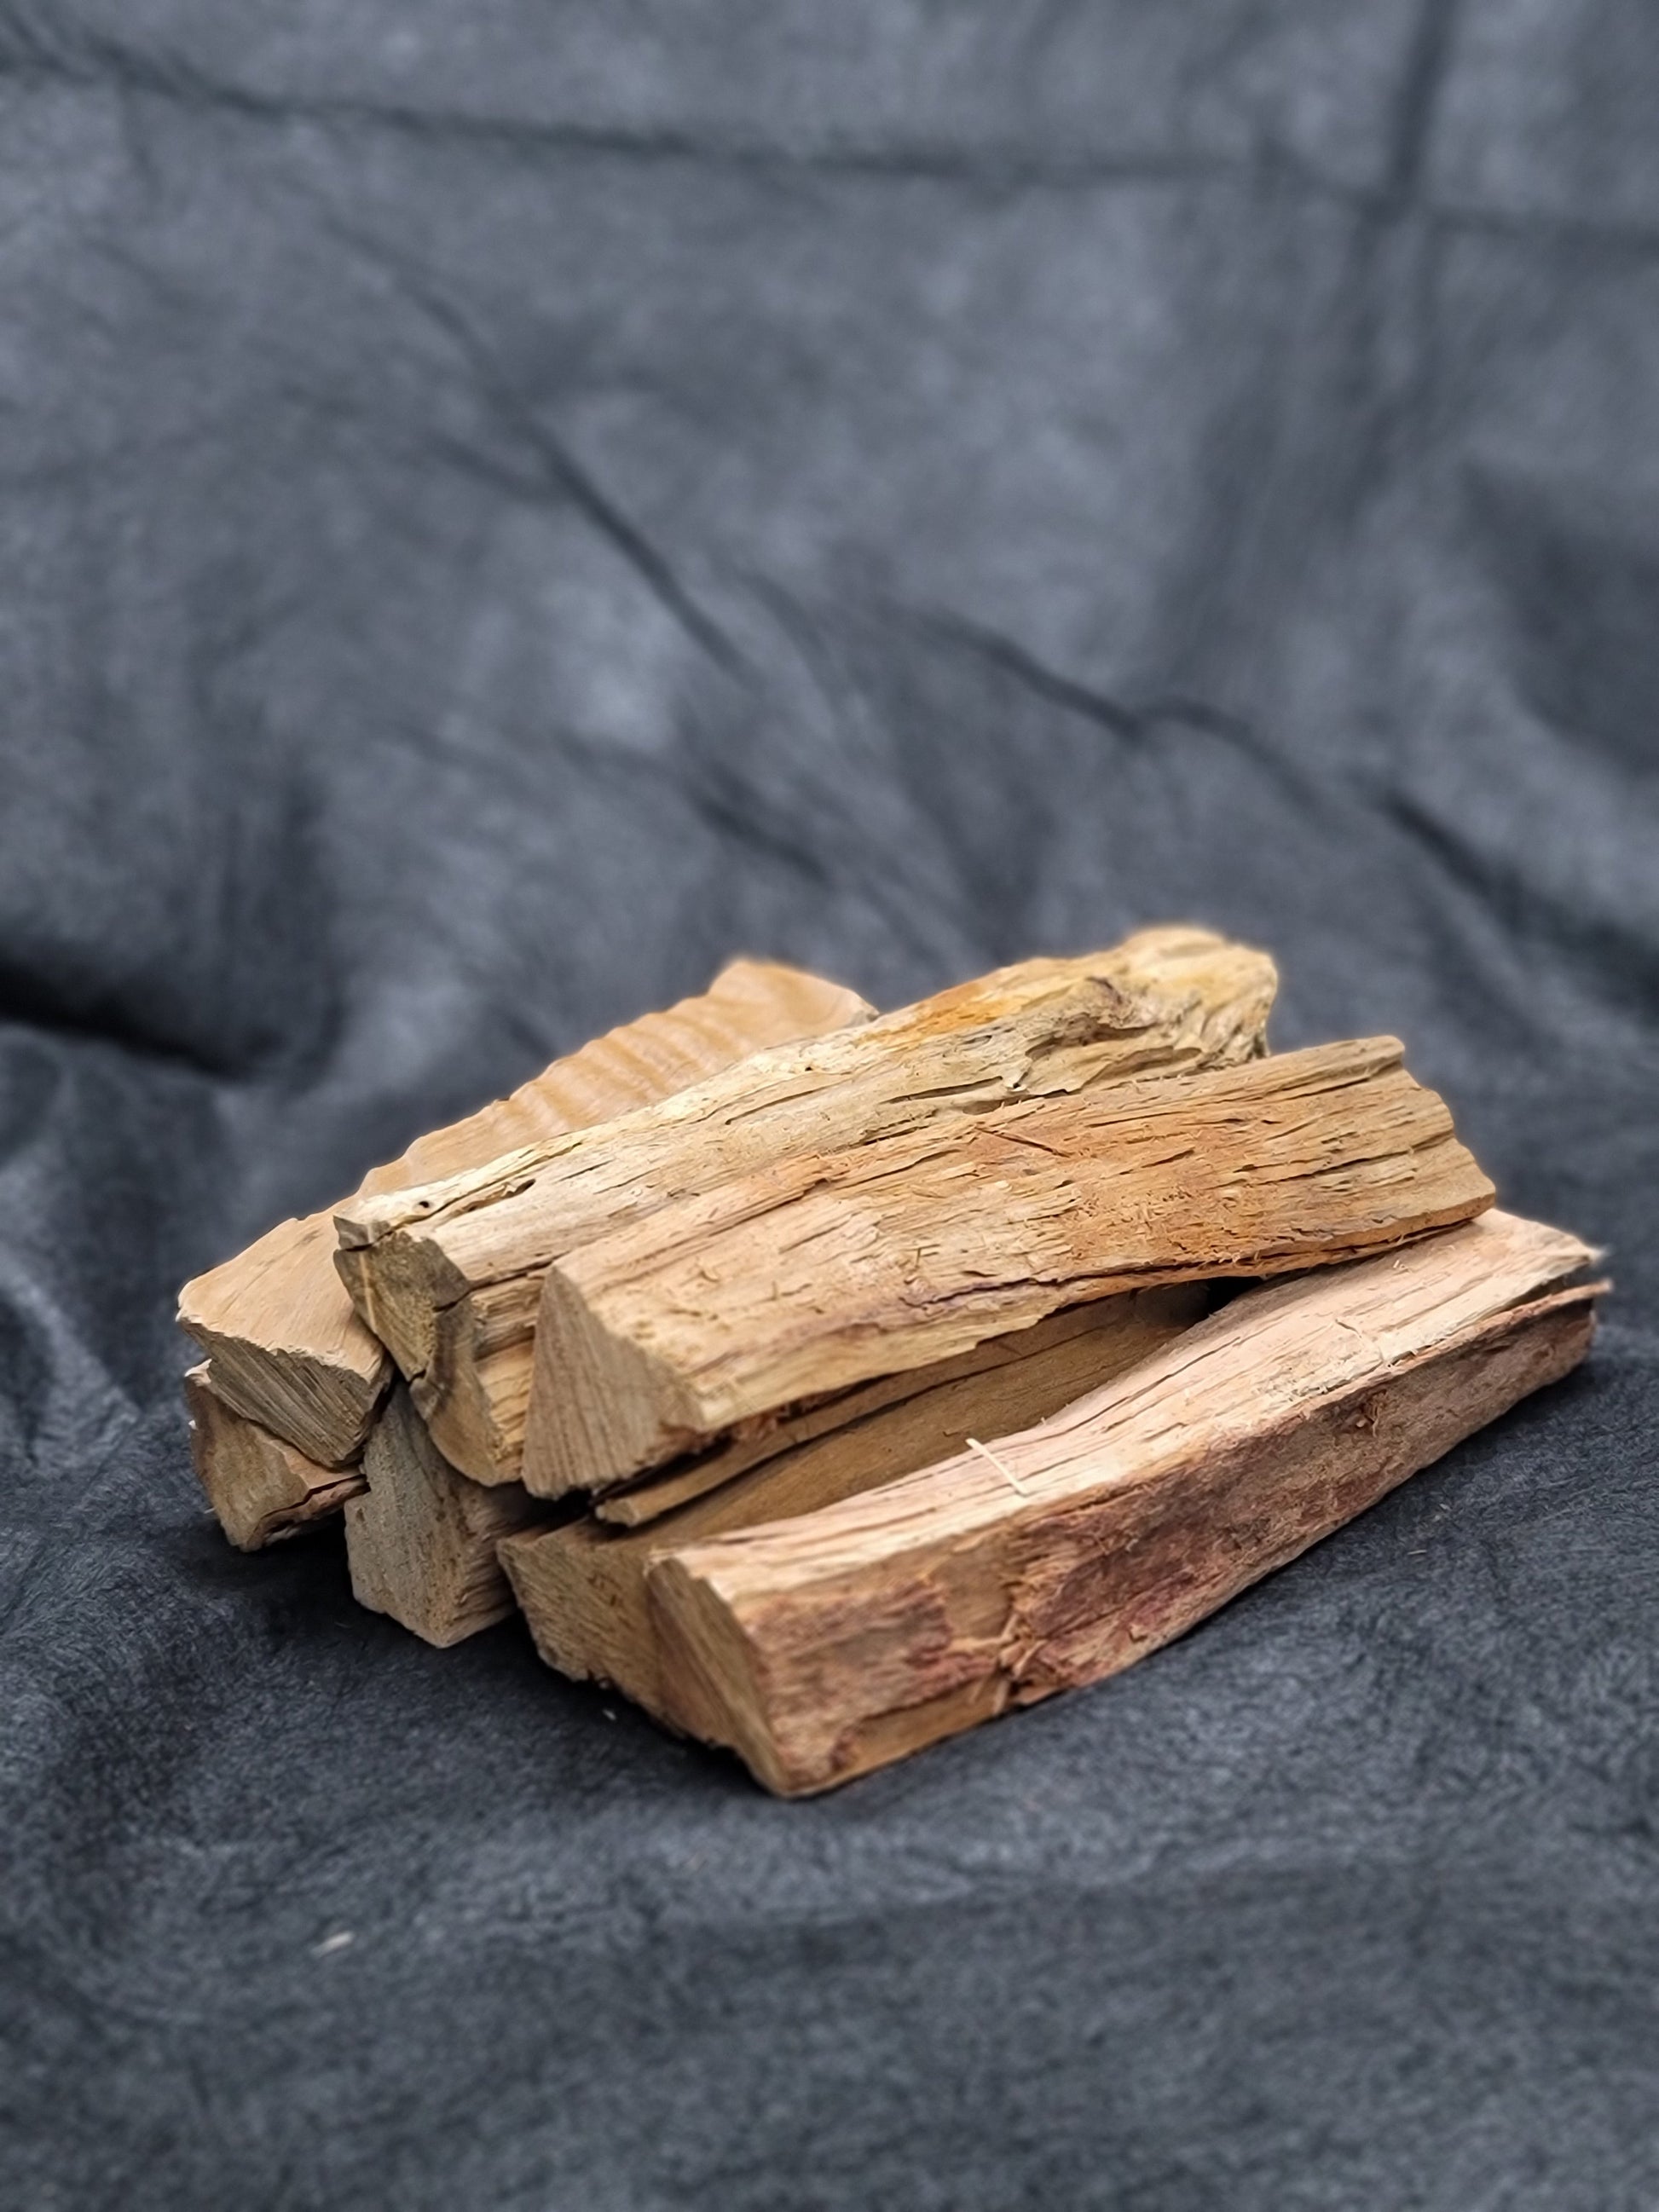 Ironwood Split Firewood - Medium Box - FIREWOOD HAWAII